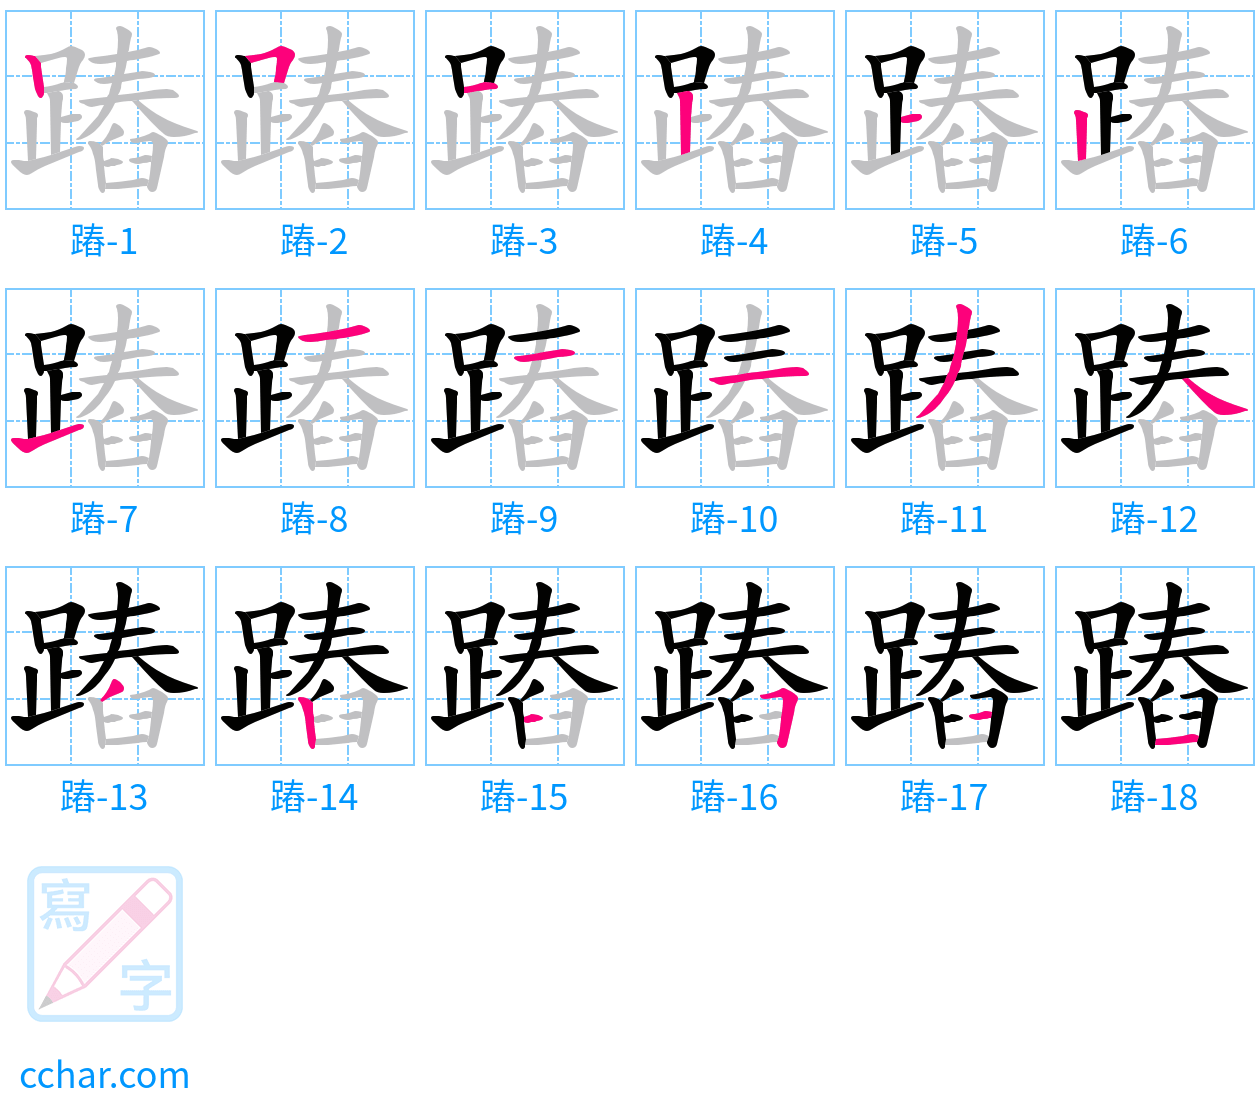 蹖 stroke order step-by-step diagram